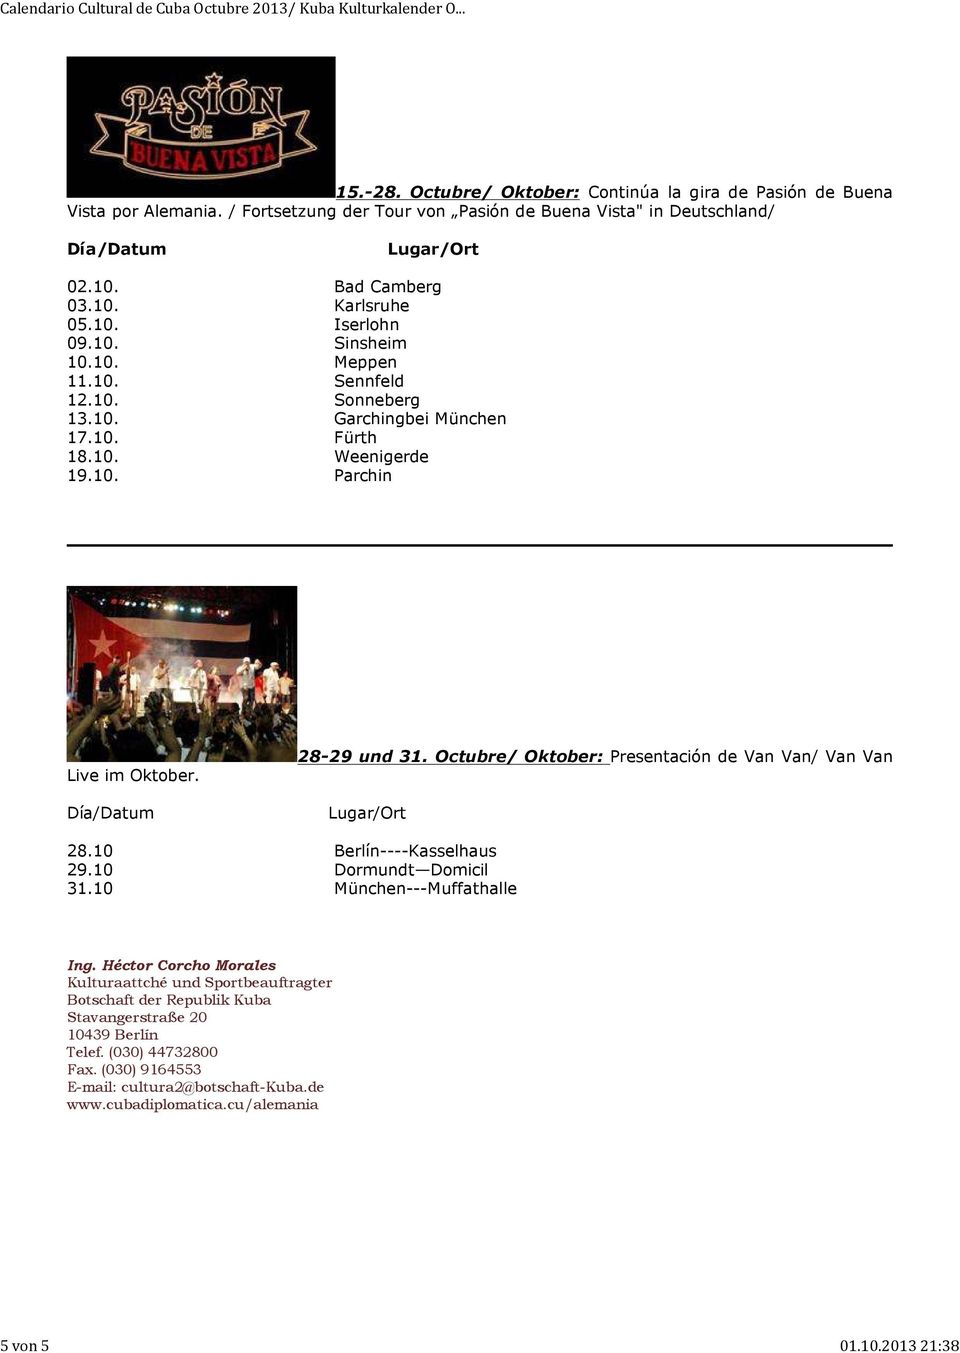 10. Fürth 18.10. Weenigerde 19.10. Parchin Live im Oktober. 28-29 und 31. Octubre/ Oktober: Presentación de Van Van/ Van Van 28.10 Berlín----Kasselhaus 29.10 Dormundt Domicil 31.